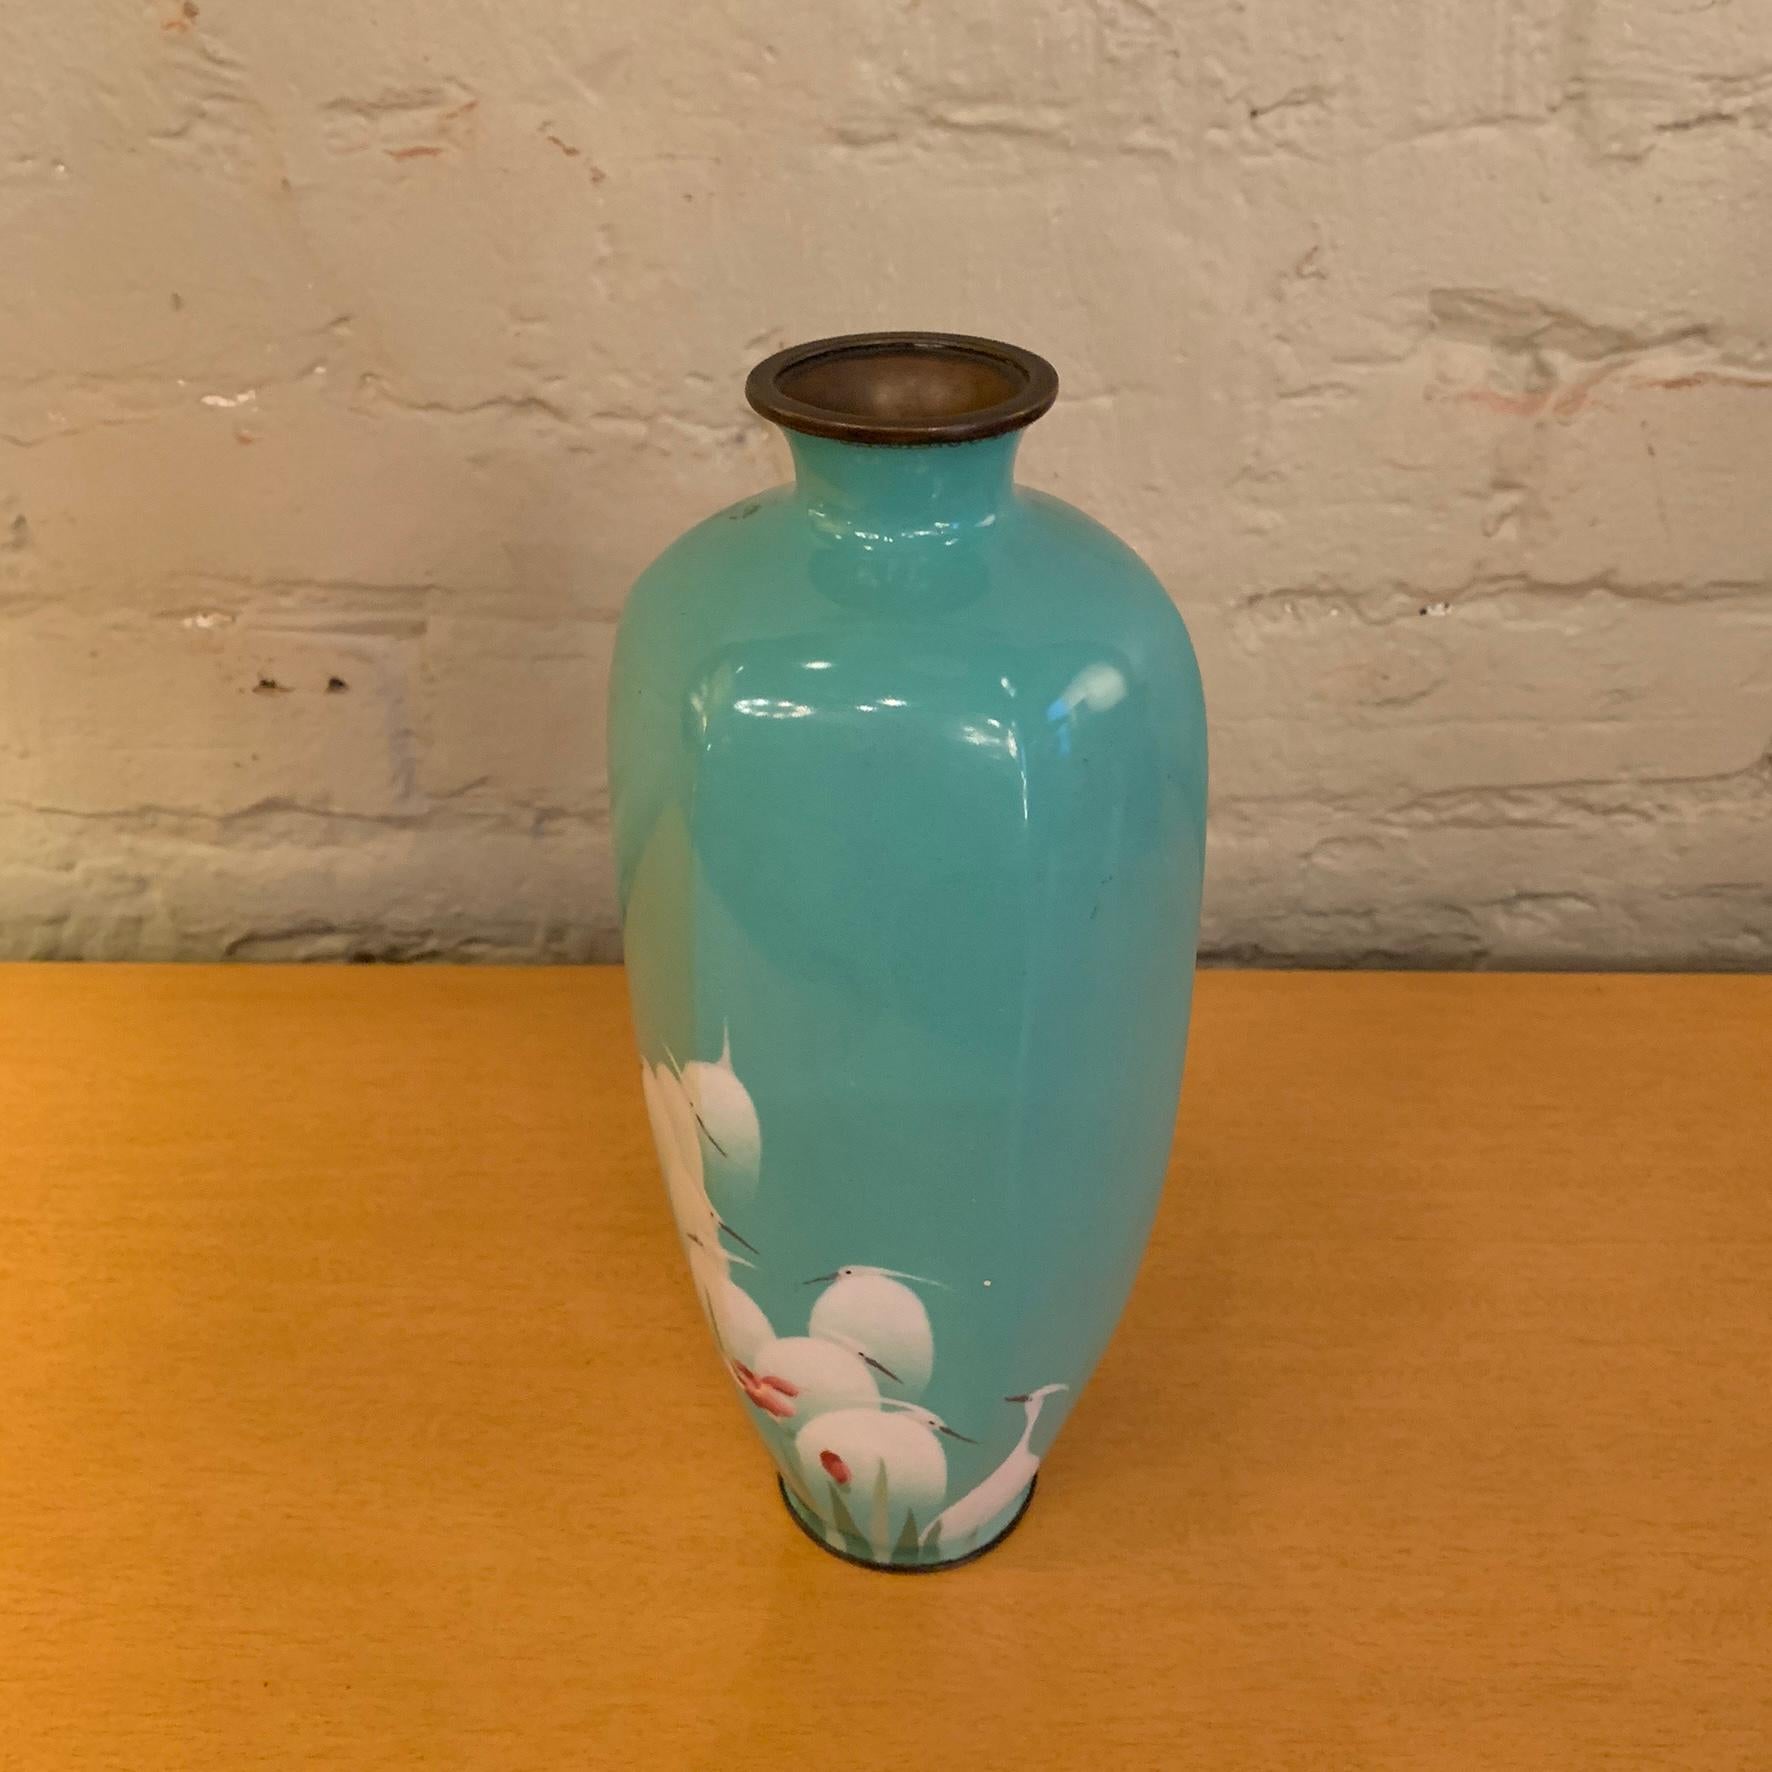 Die schöne türkisblaue Vase mit Emaille über Kupfer, auf der kaskadenförmige Vögel abgebildet sind, stammt wahrscheinlich aus China, ca. 1930er Jahre.